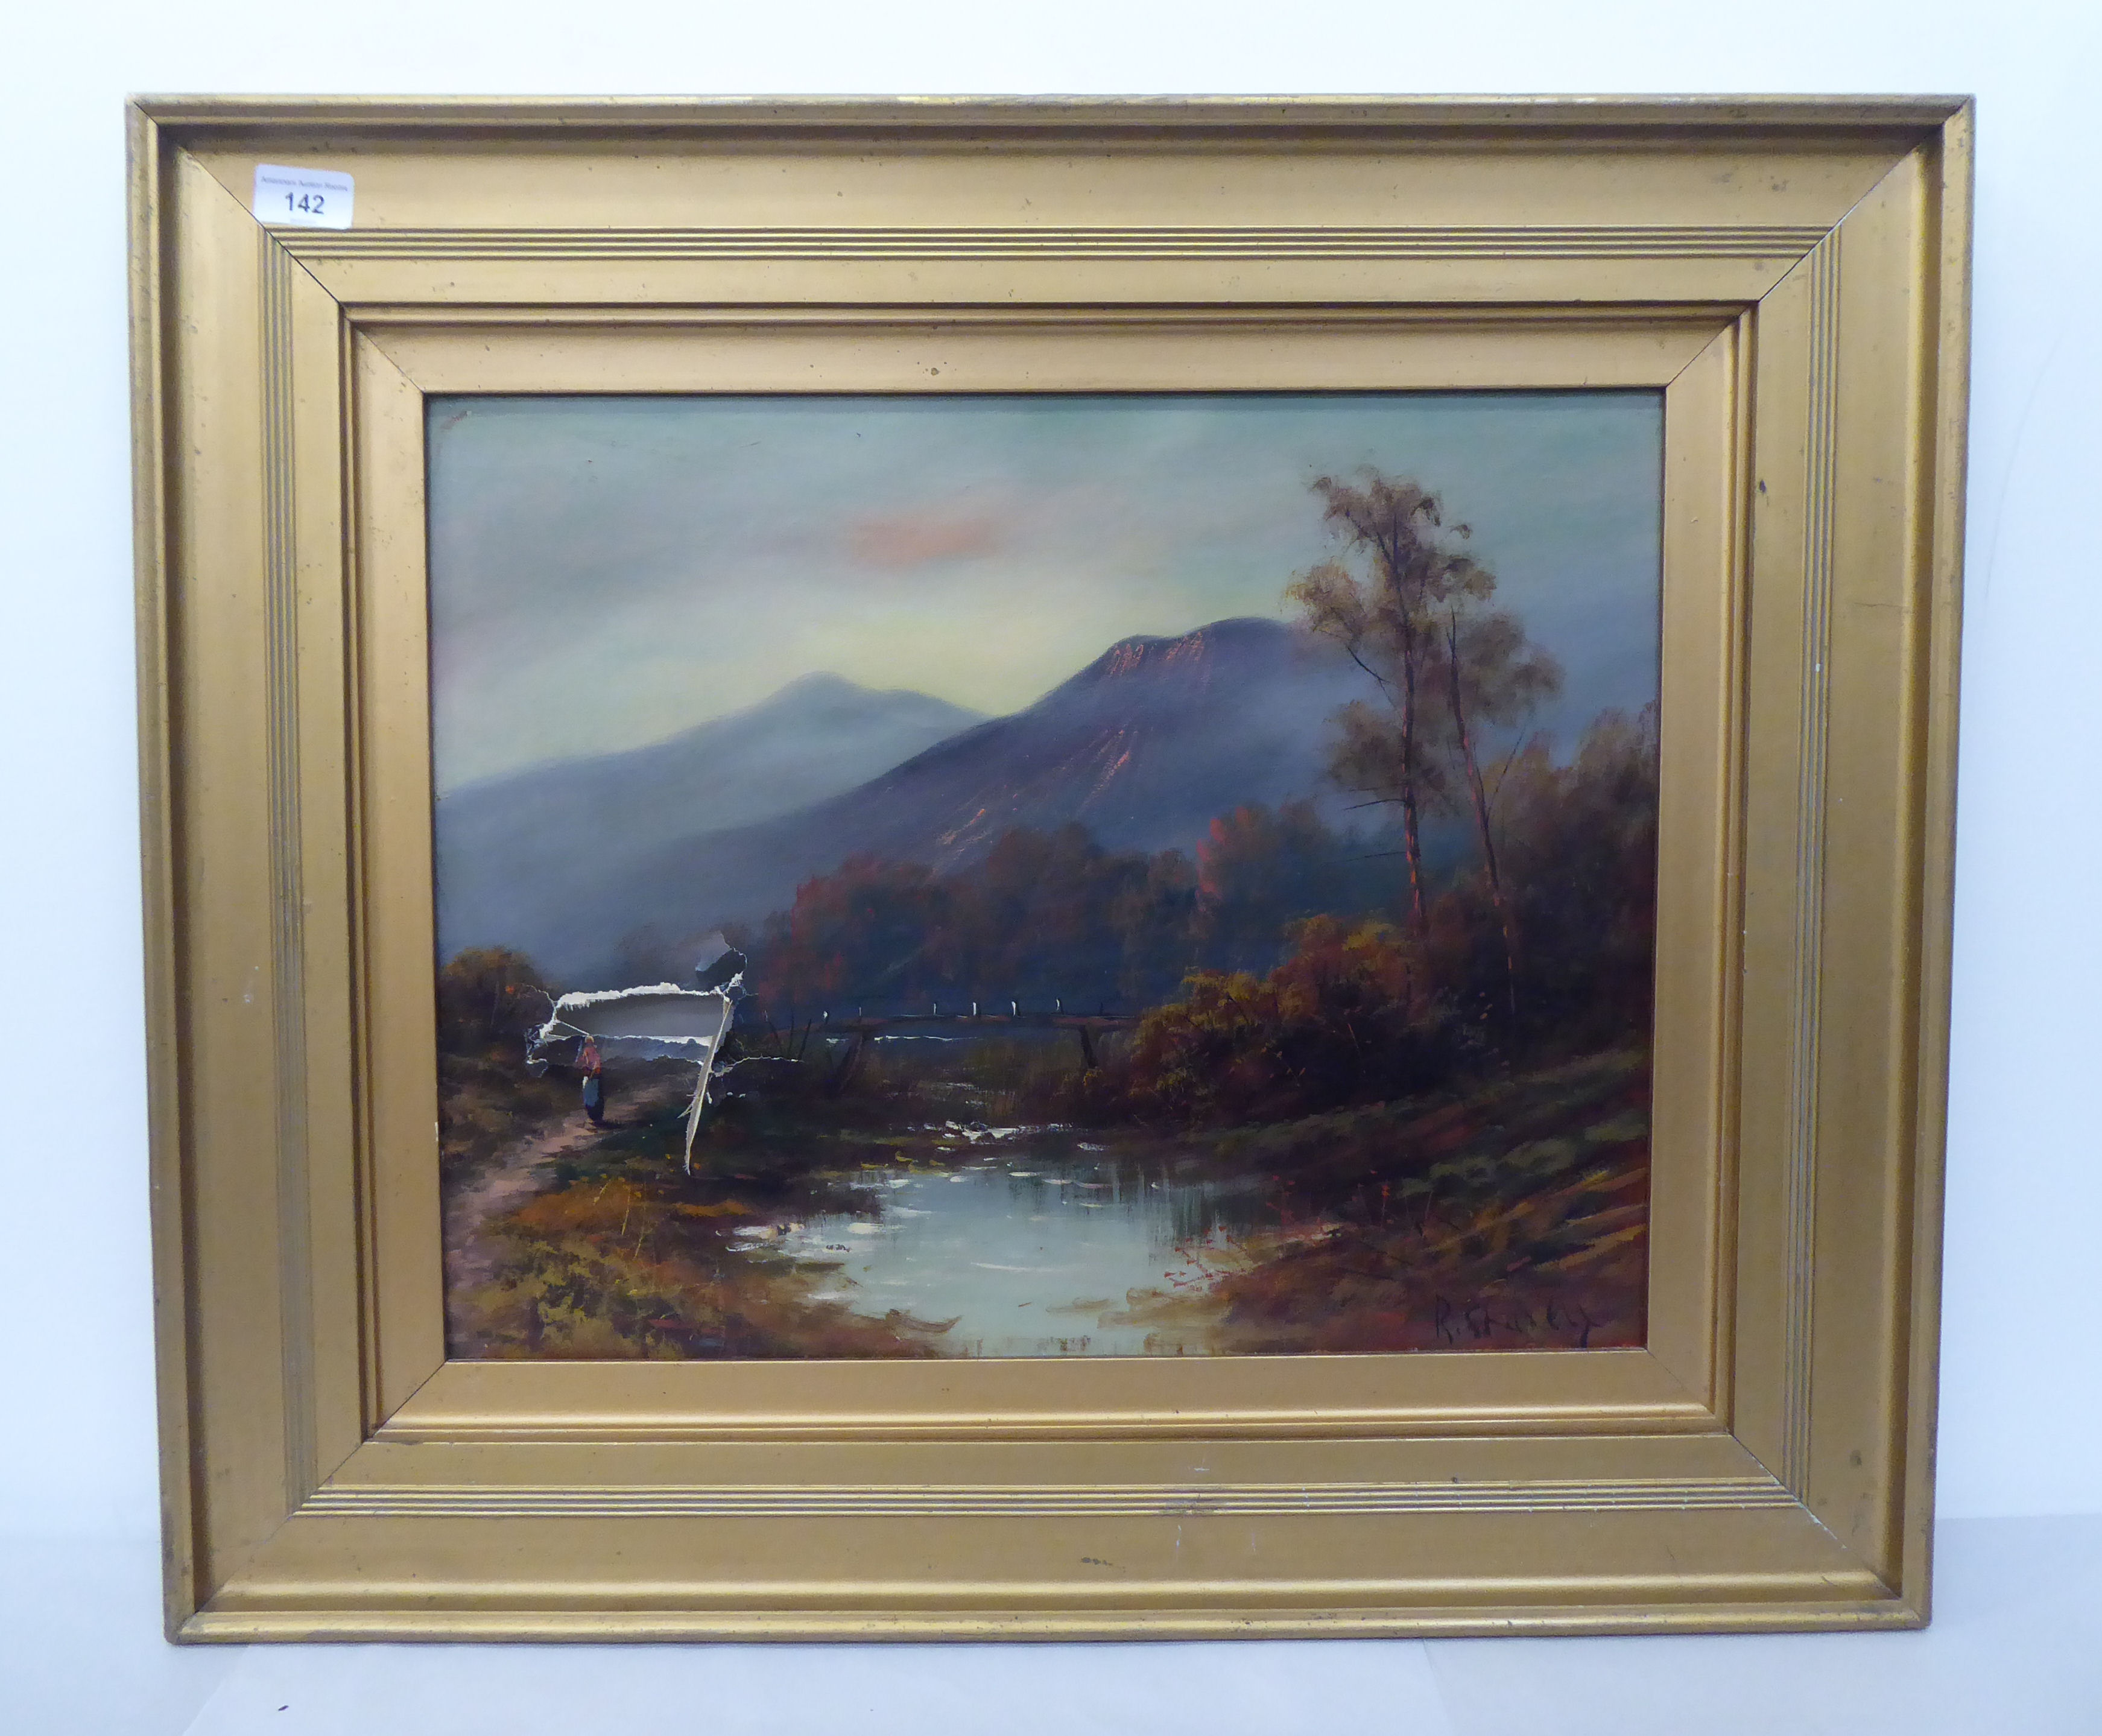 R Starkey - a highland lake scene  oil on canvas  bears a signature  16.5" x 19"  framed